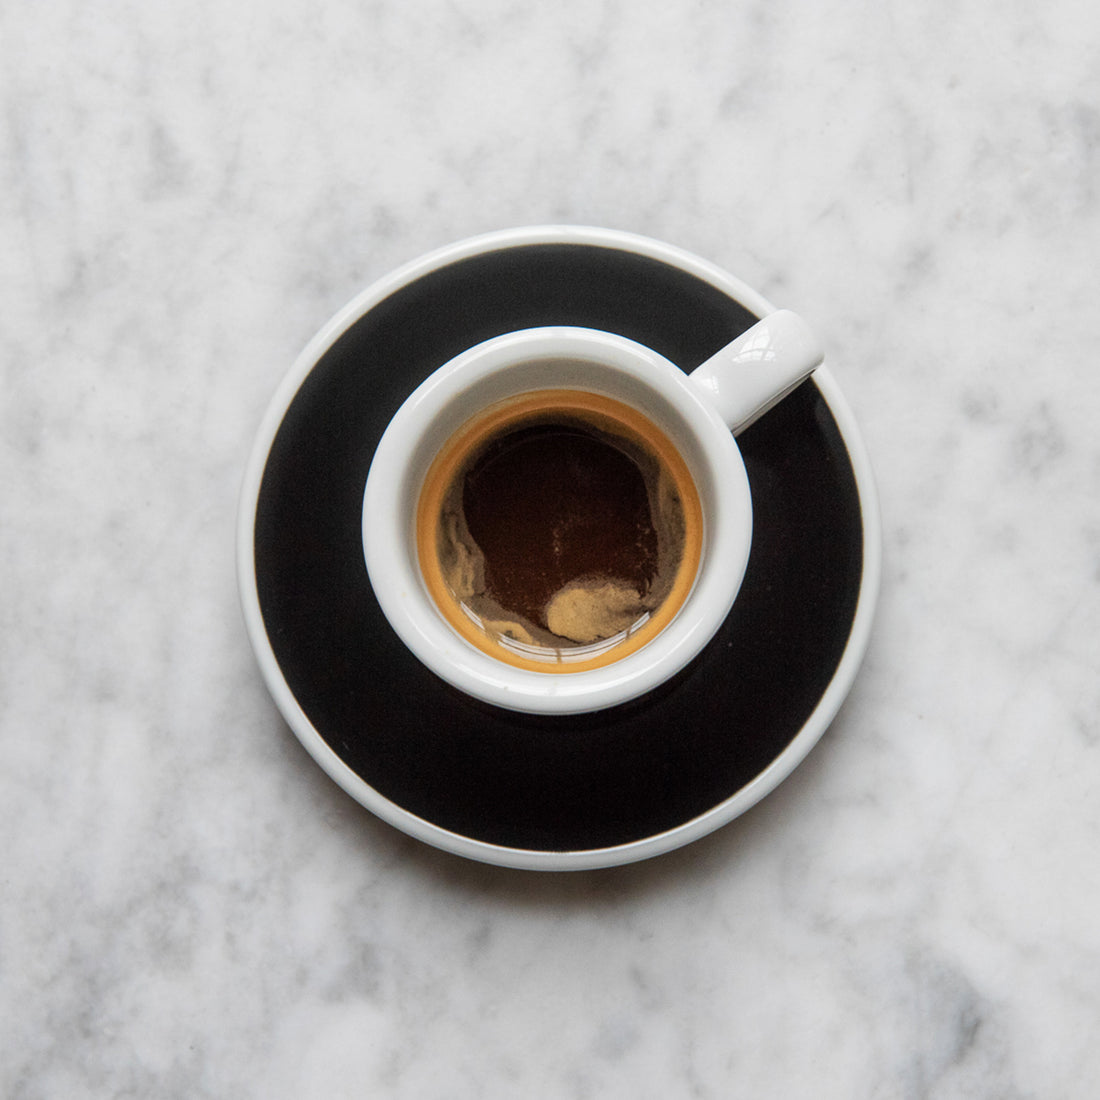 Loveramics, Loveramics Egg Espresso Cup - Black, Redber Coffee